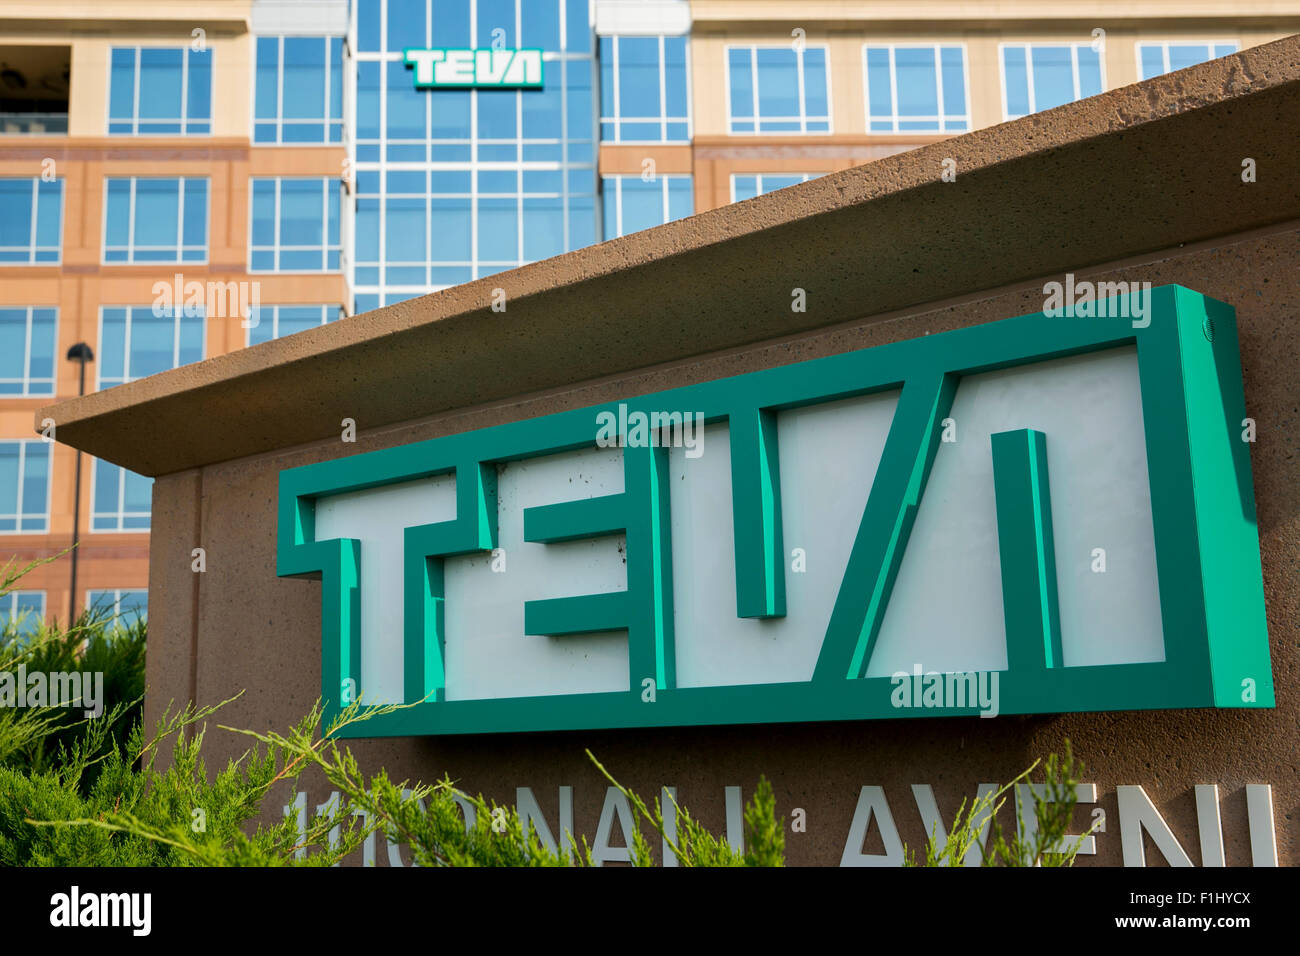 Un logo affiche à l'extérieur d'un établissement occupé par Teva Pharmaceutical Industries dans la région de Overland Park, Kansas le 23 août 2015. Banque D'Images